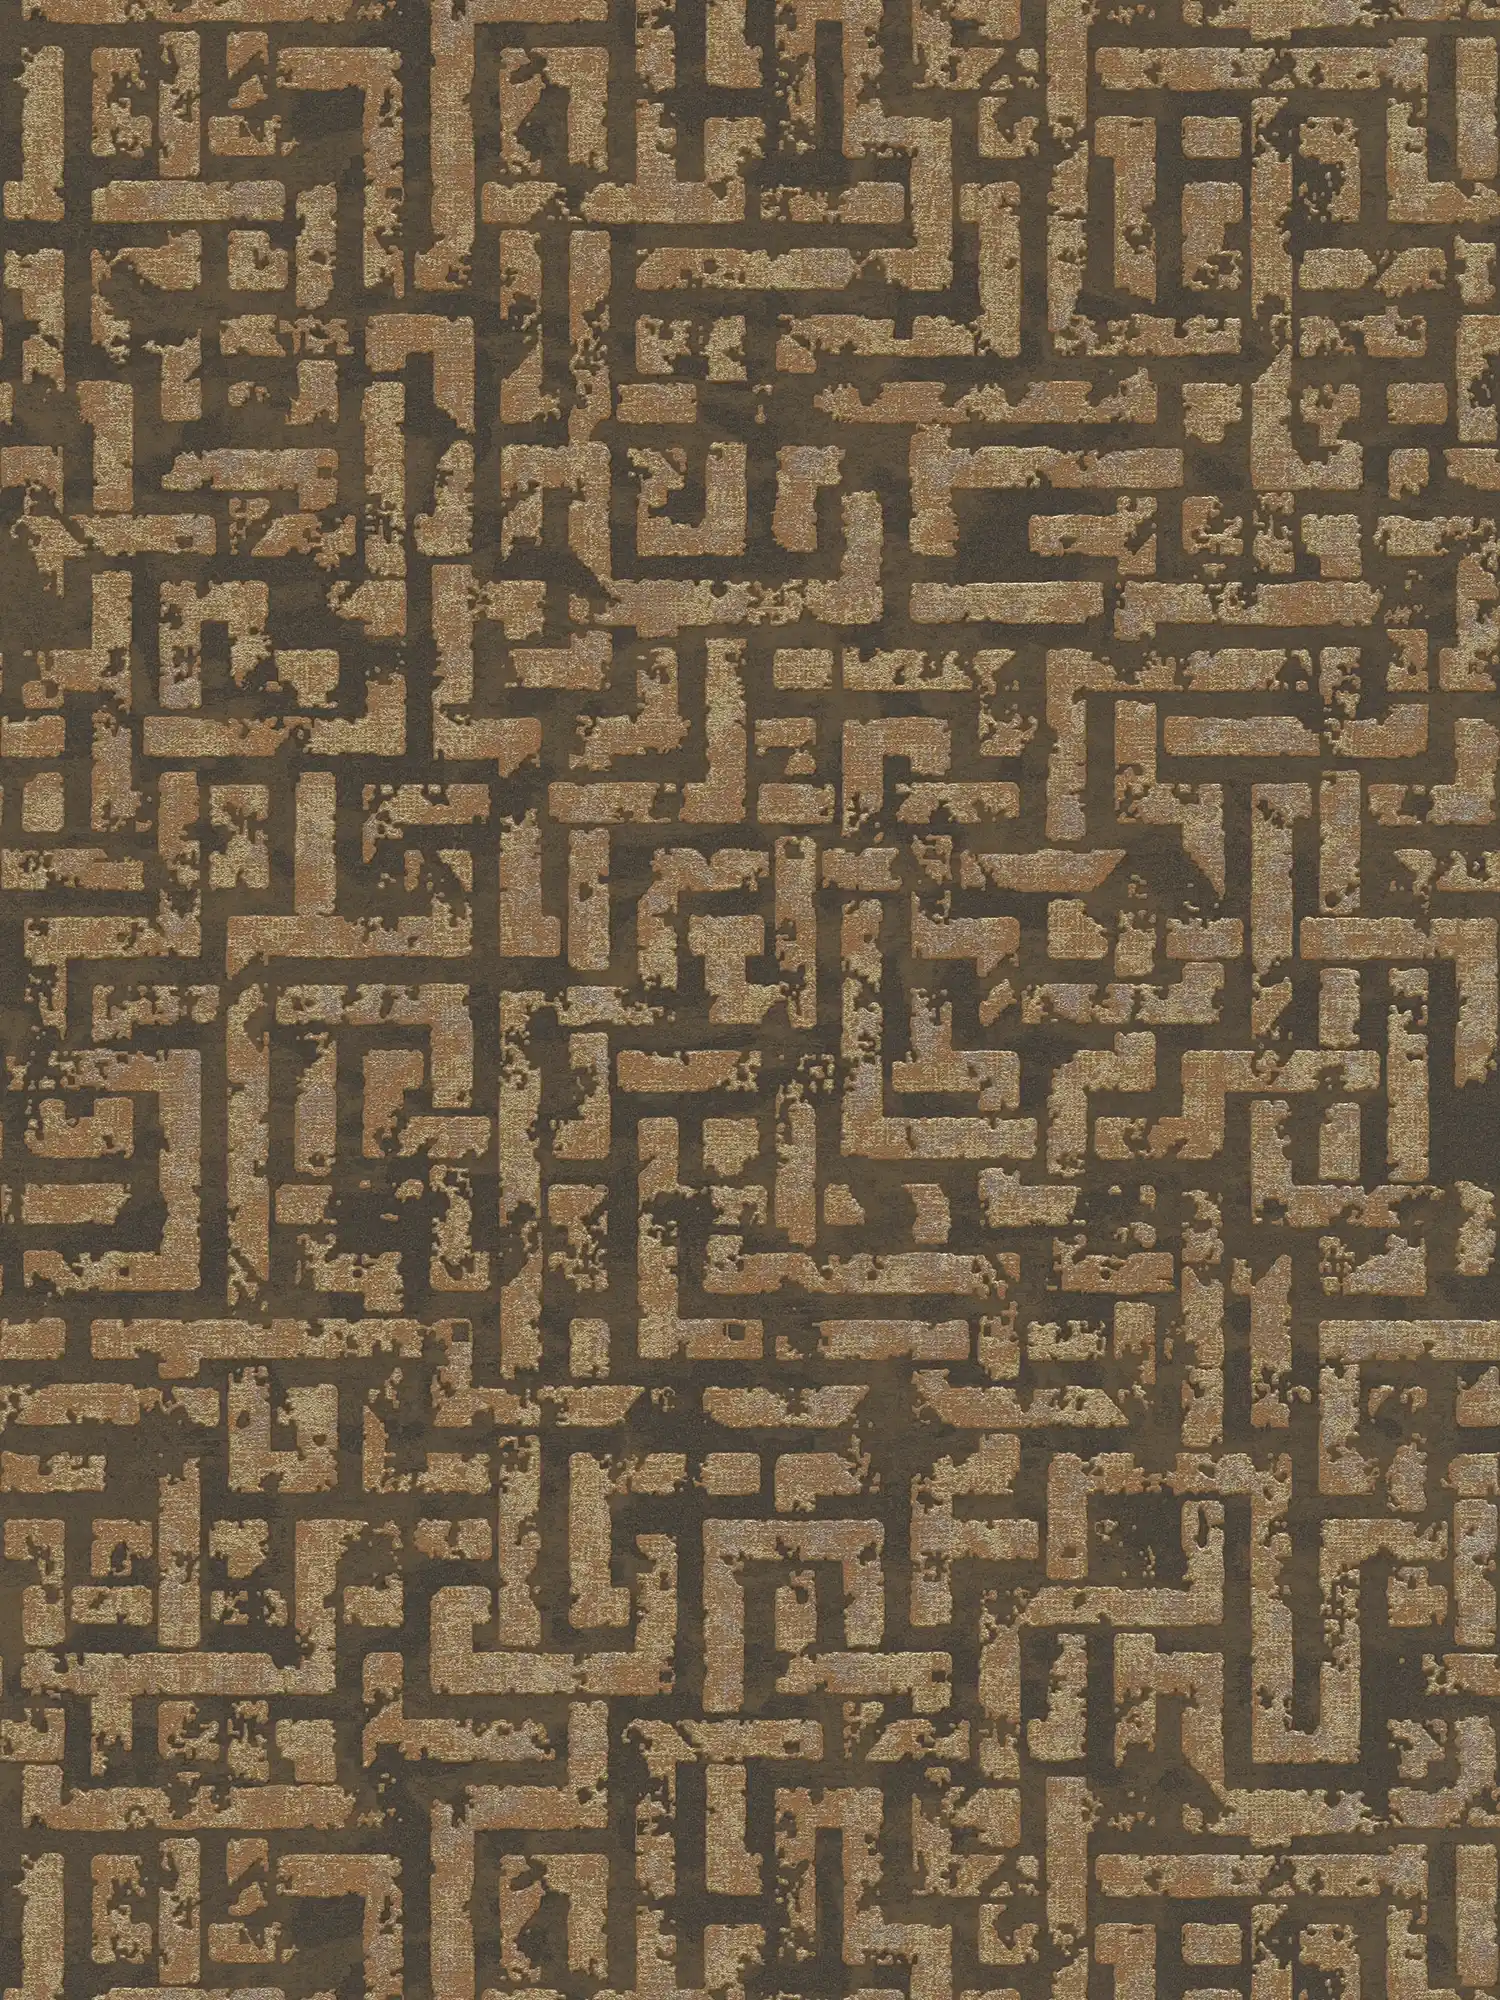 Ethno patroon behang met gebruikt design & reliëf grafiek - bruin, metallic
